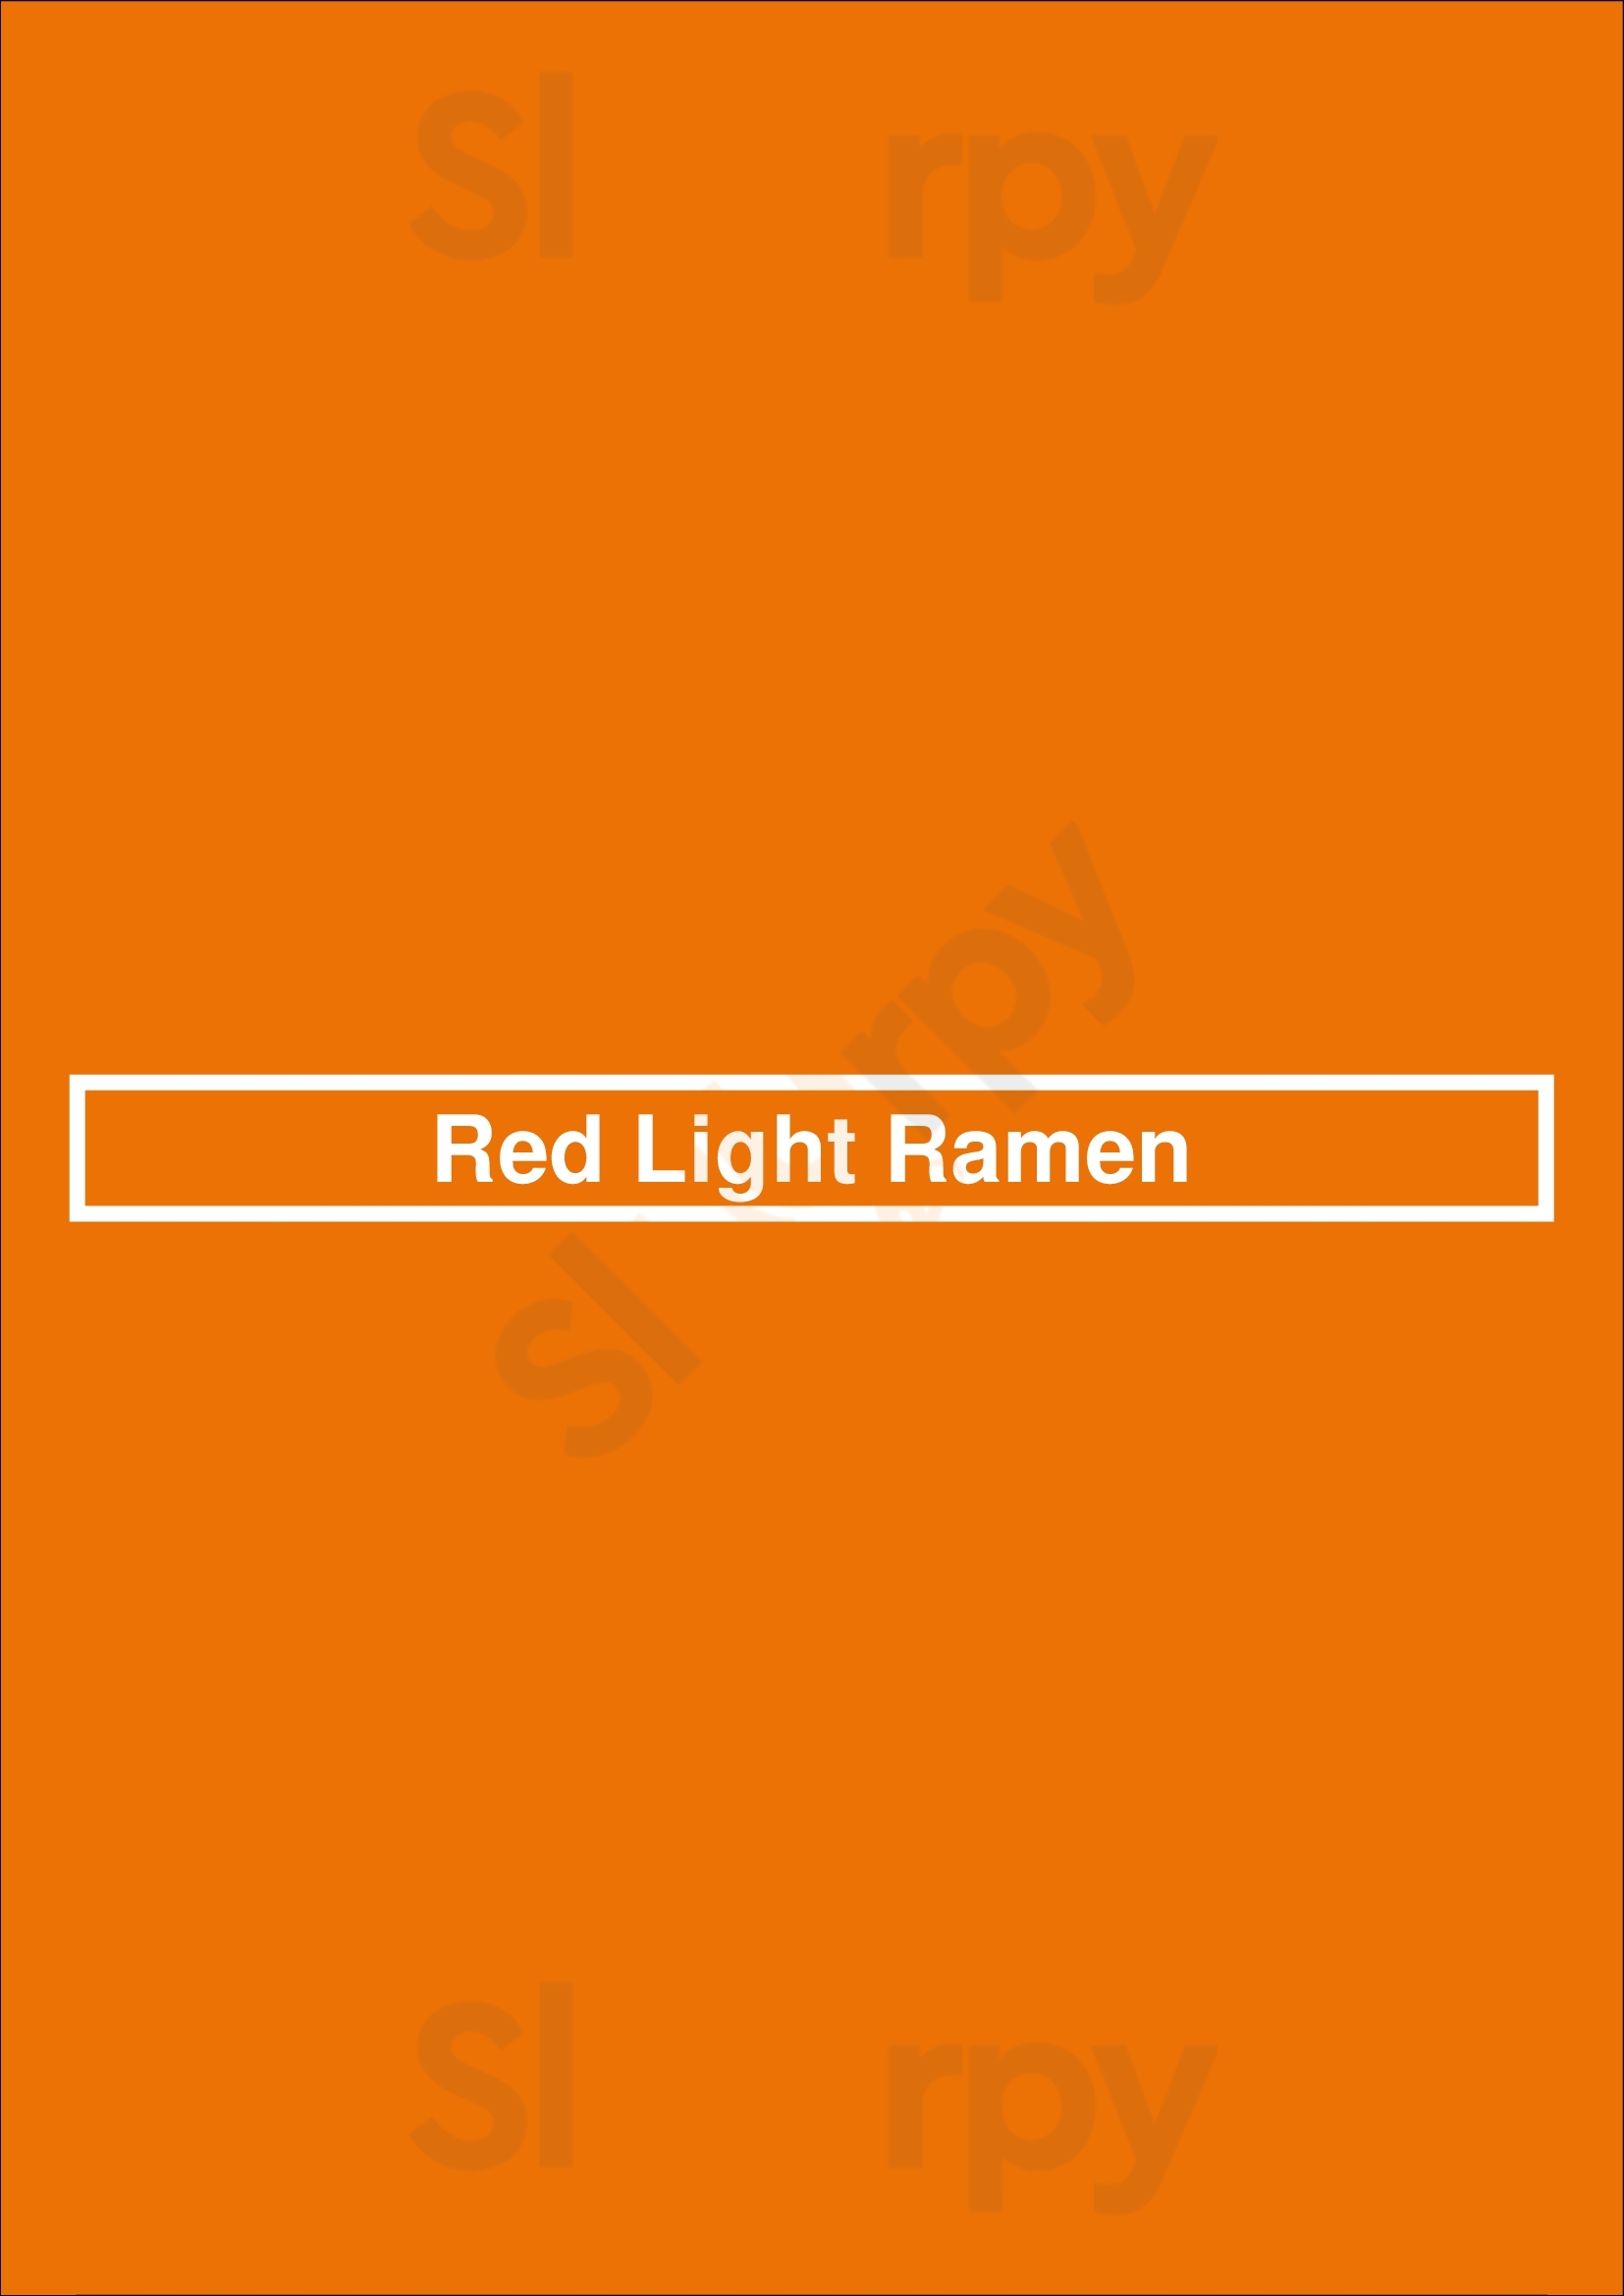 Red Light Ramen Milwaukee Menu - 1